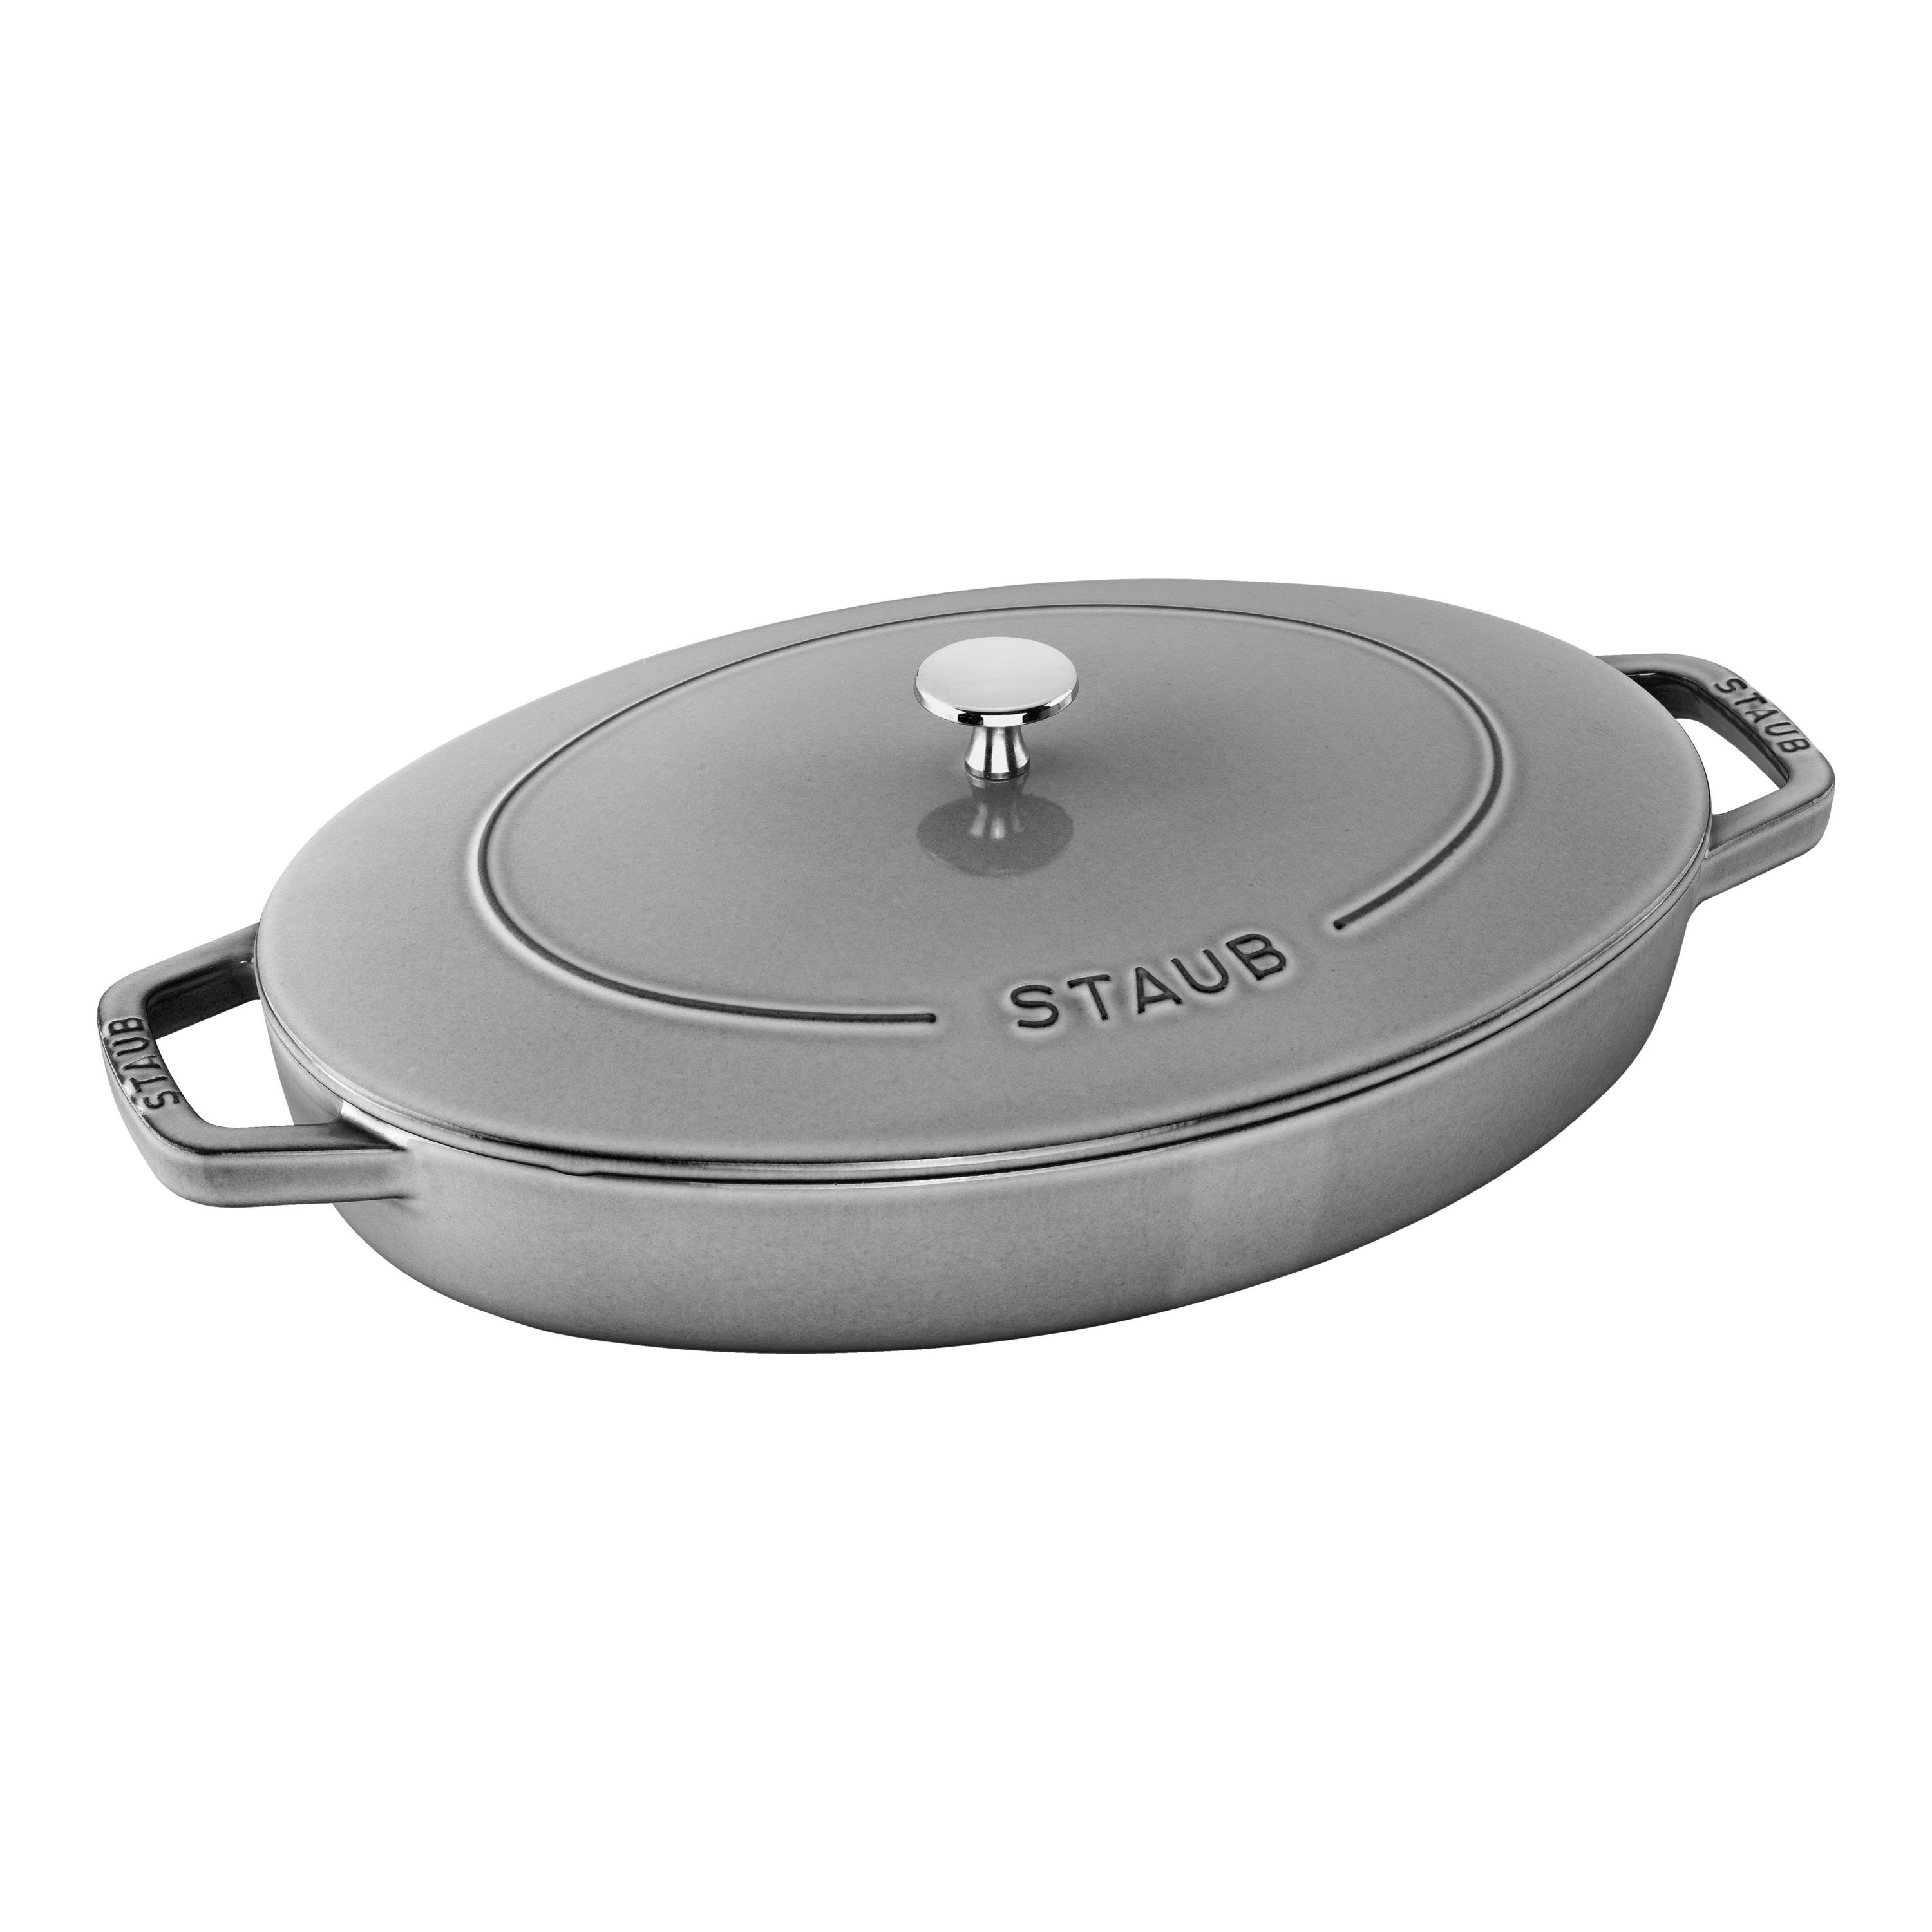 Staub Cast Iron Oval Roasting Pans & Casserole Dishes, 2 Sizes, Enameled